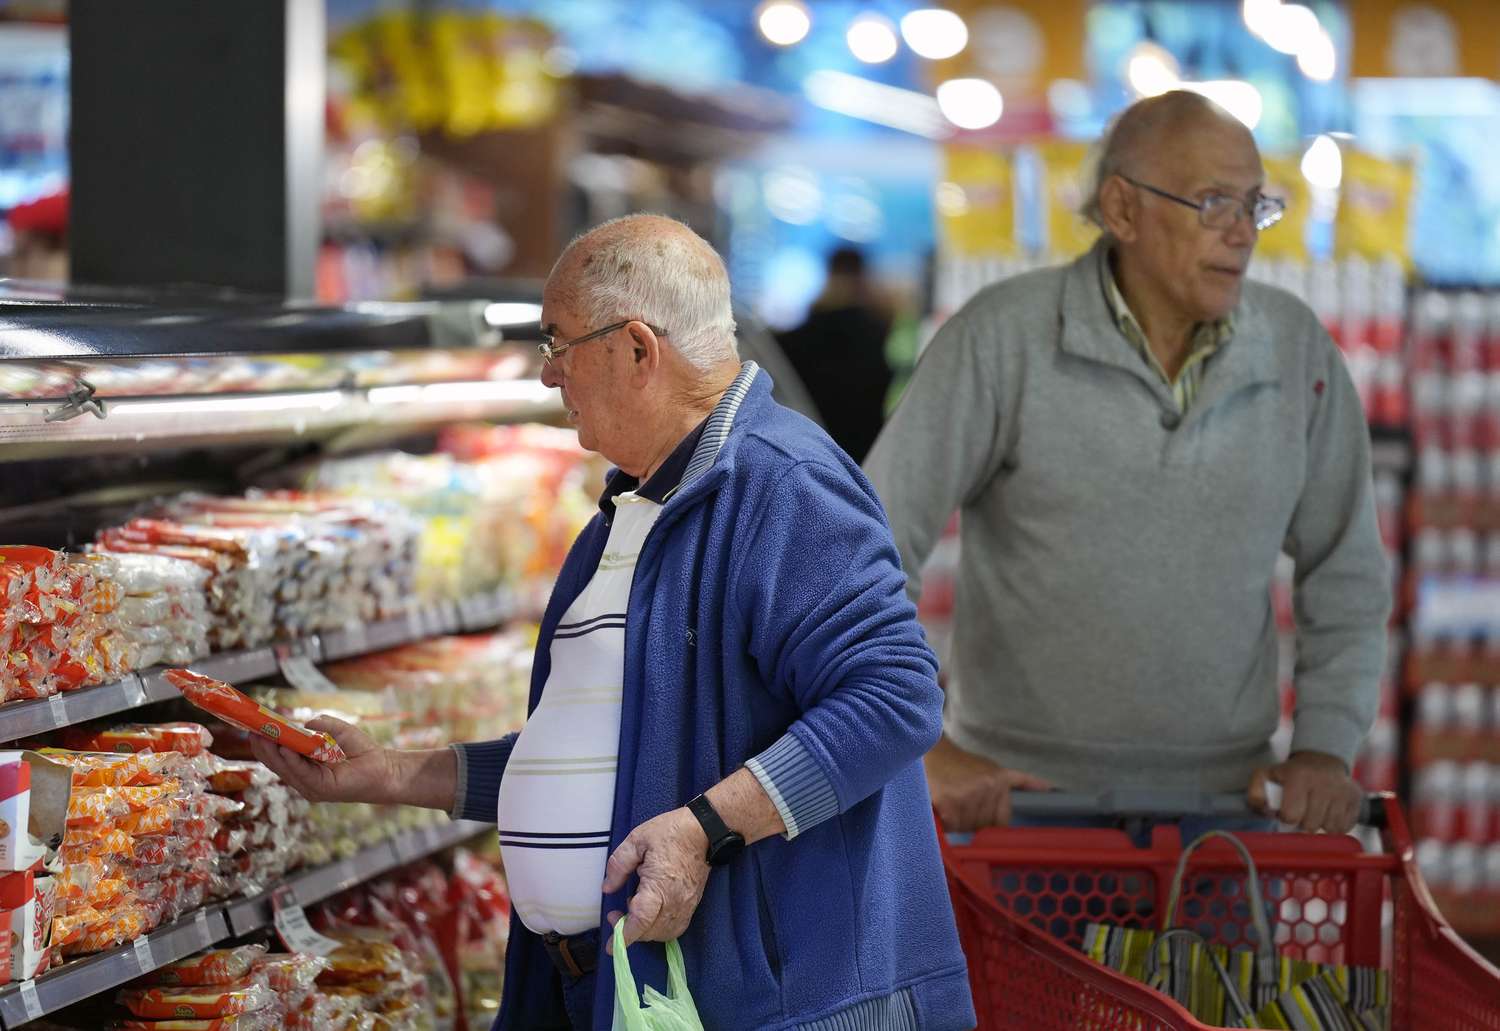 Aseguran que el 66% de los trabajadores gastan la mayor parte del salario en el supermercado